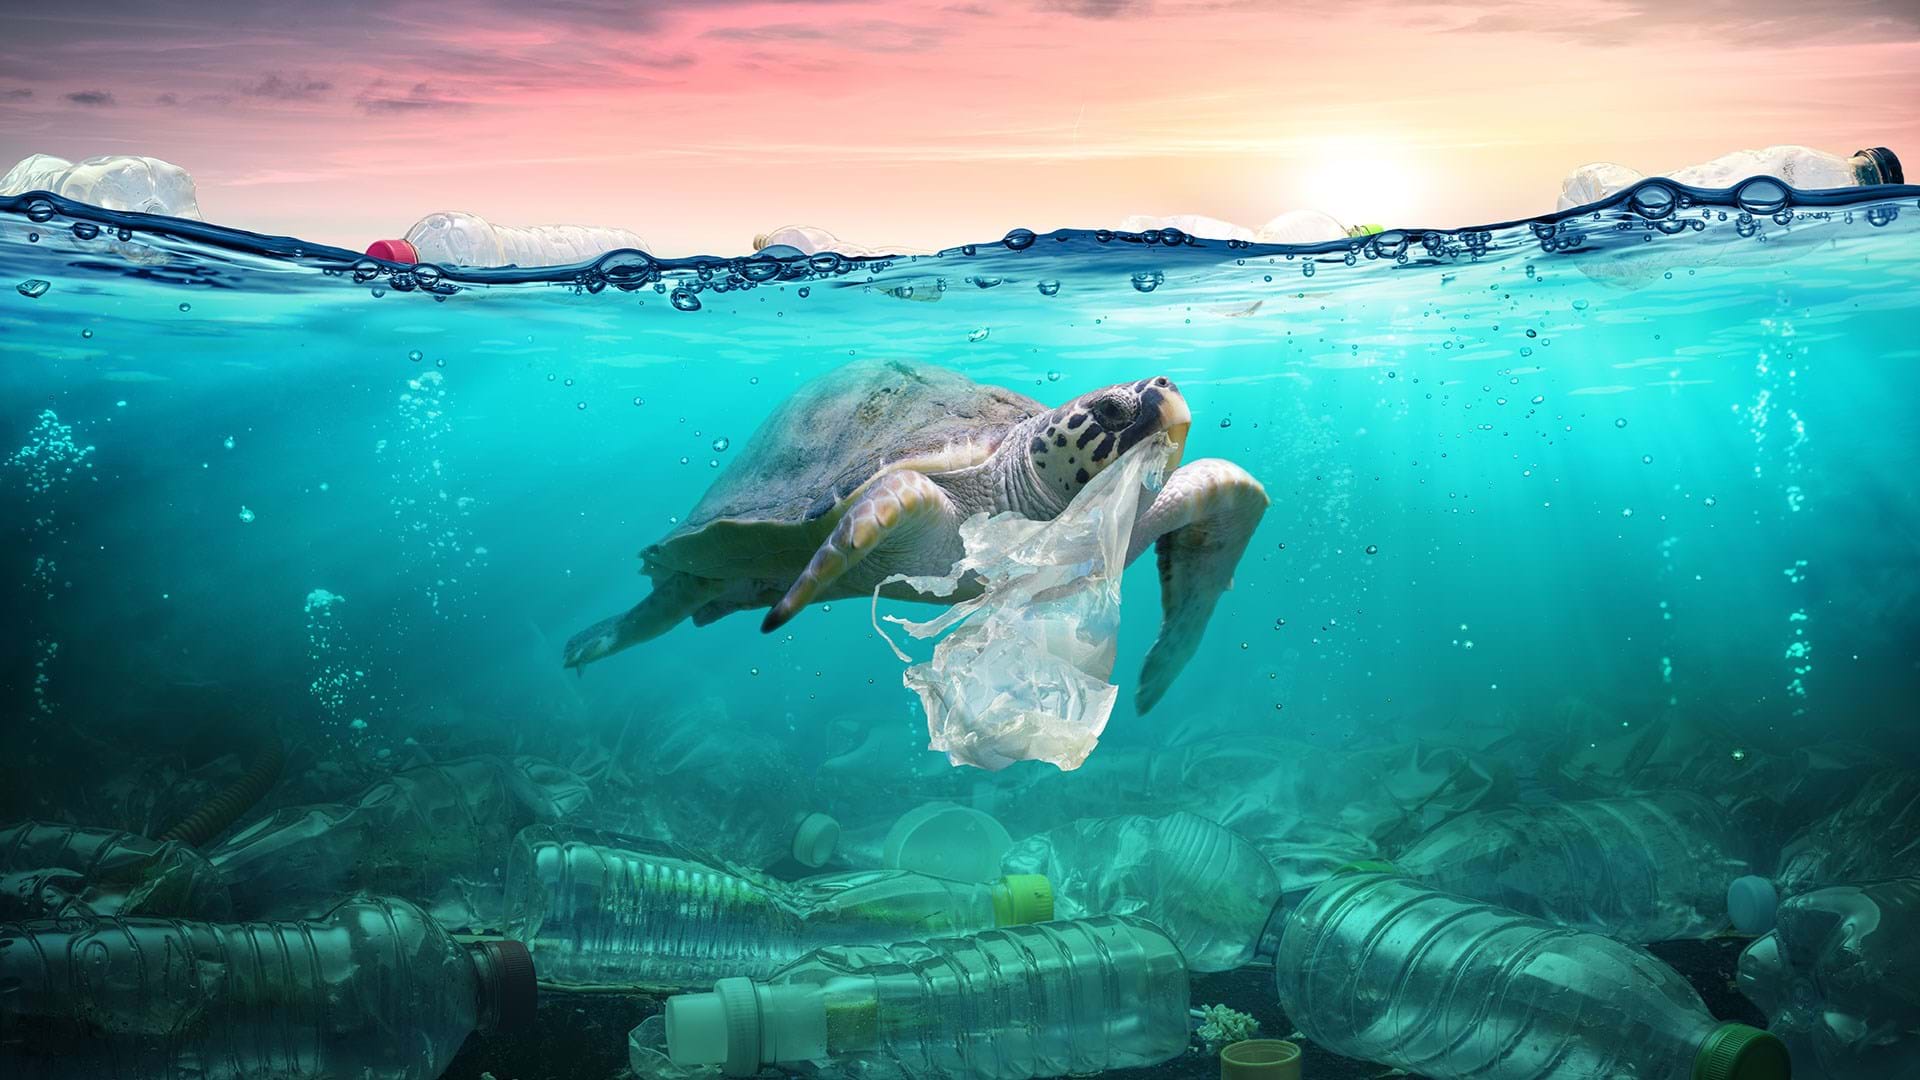 100+ Plastic in the Ocean Statistics & Facts (2020-2021)